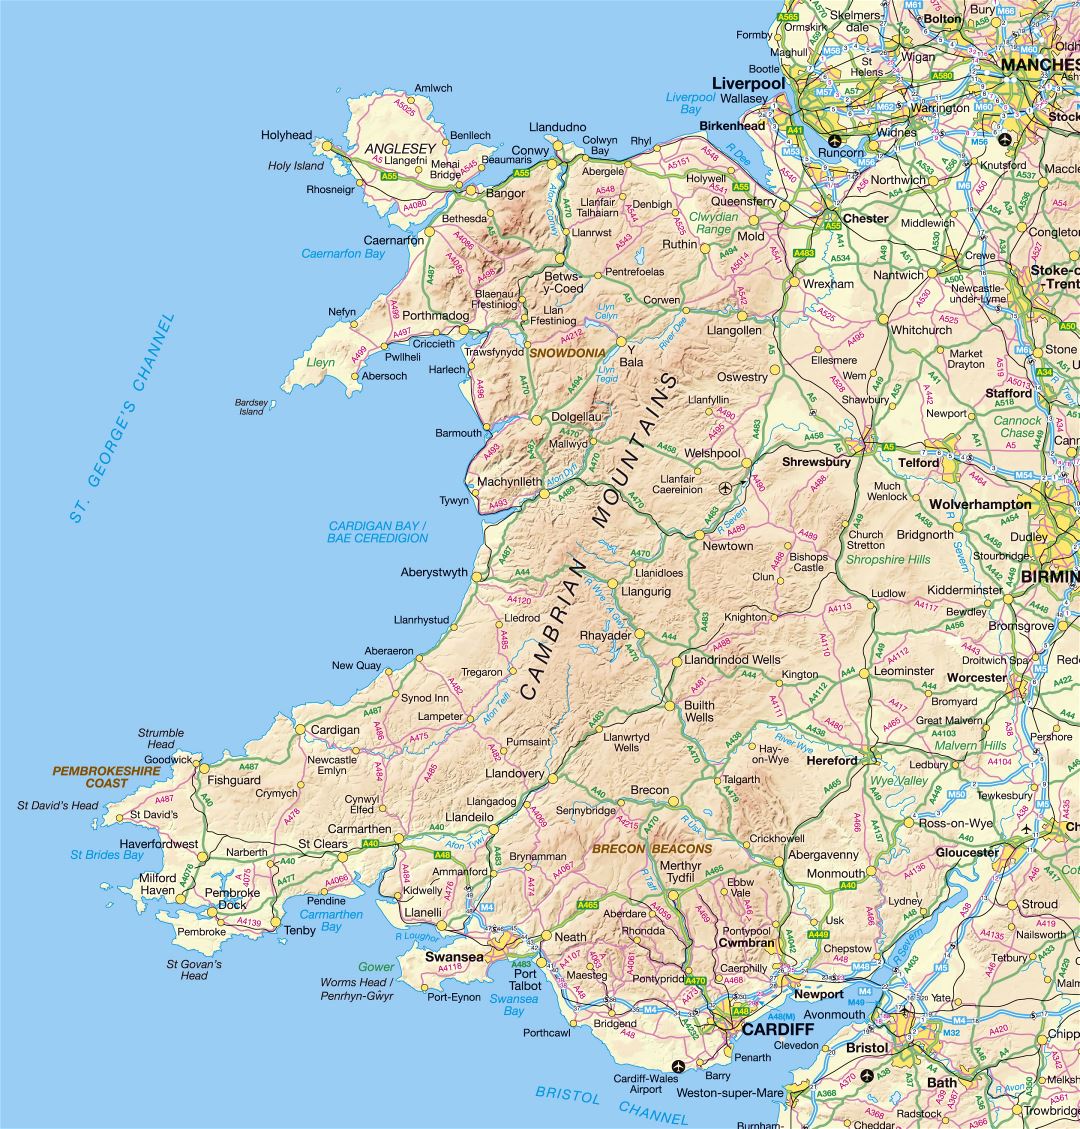 Grande detallado mapa de Gales con relieve, carreteras y ciudades